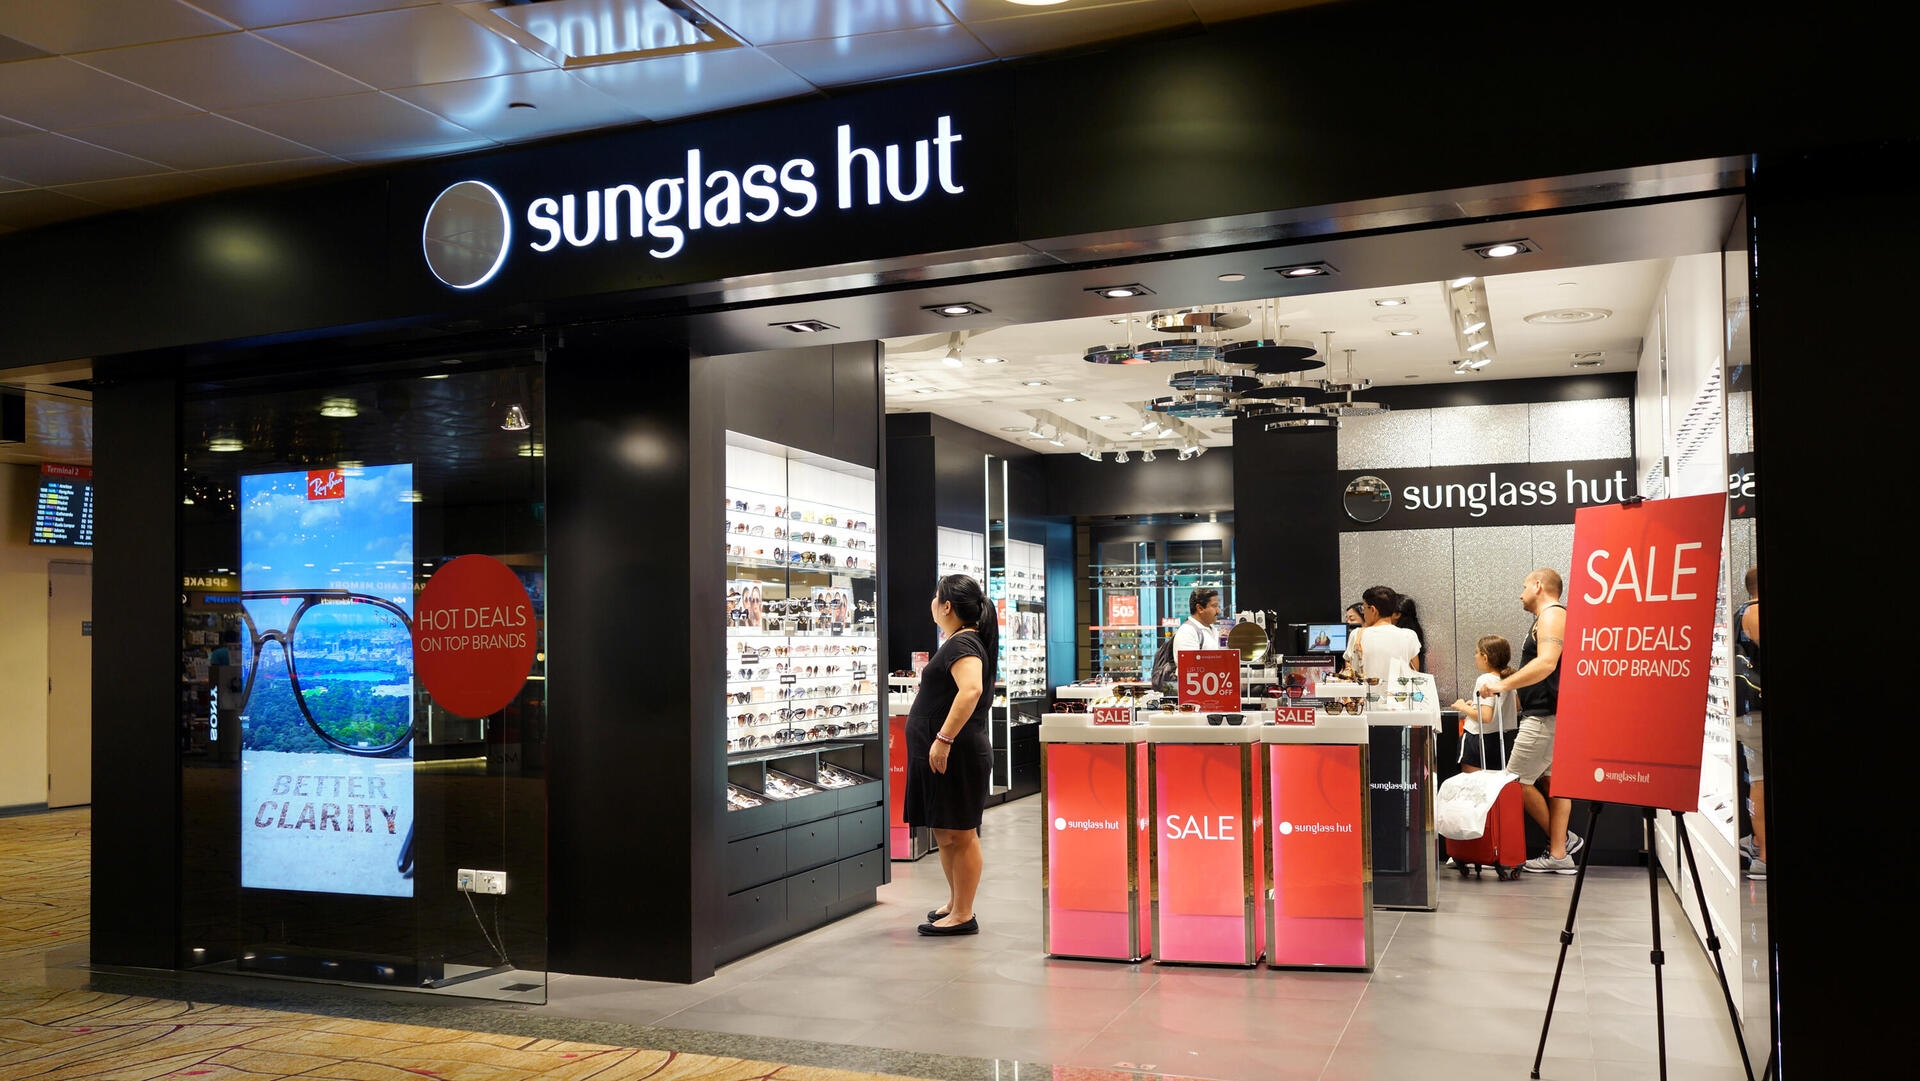 הרשת של ענקית האופטיקה הבינלאומית לוקסאוטיקה Sunglass Hut סניף הרשת בסינגפור